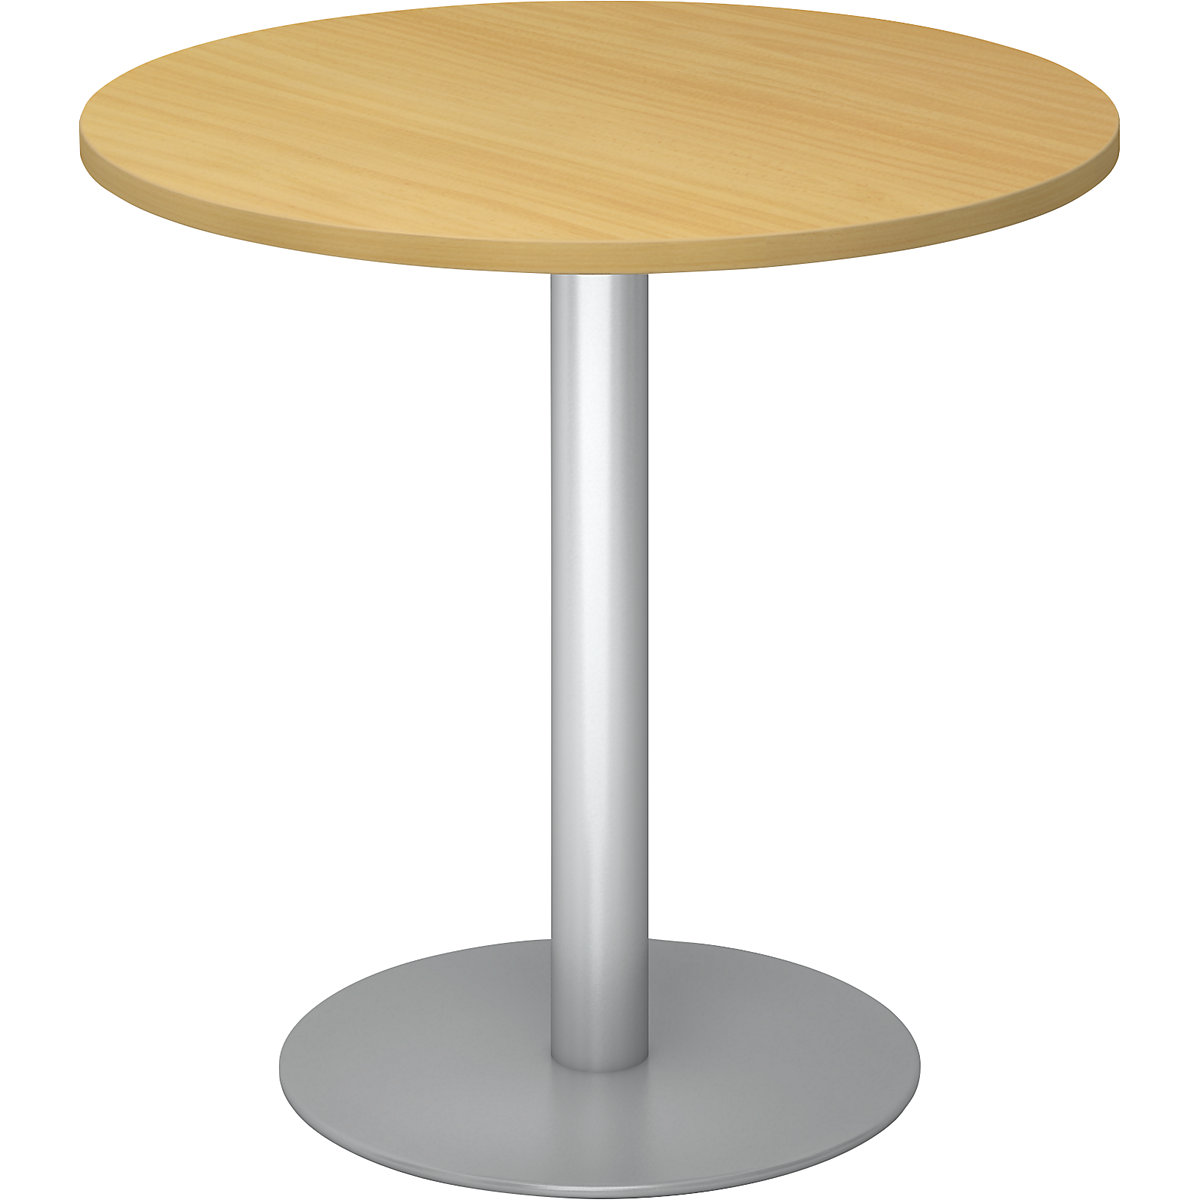 Tárgyalóasztal, Ø 800 mm, 755 mm magas, ezüst váz, bükk-dekor asztallap